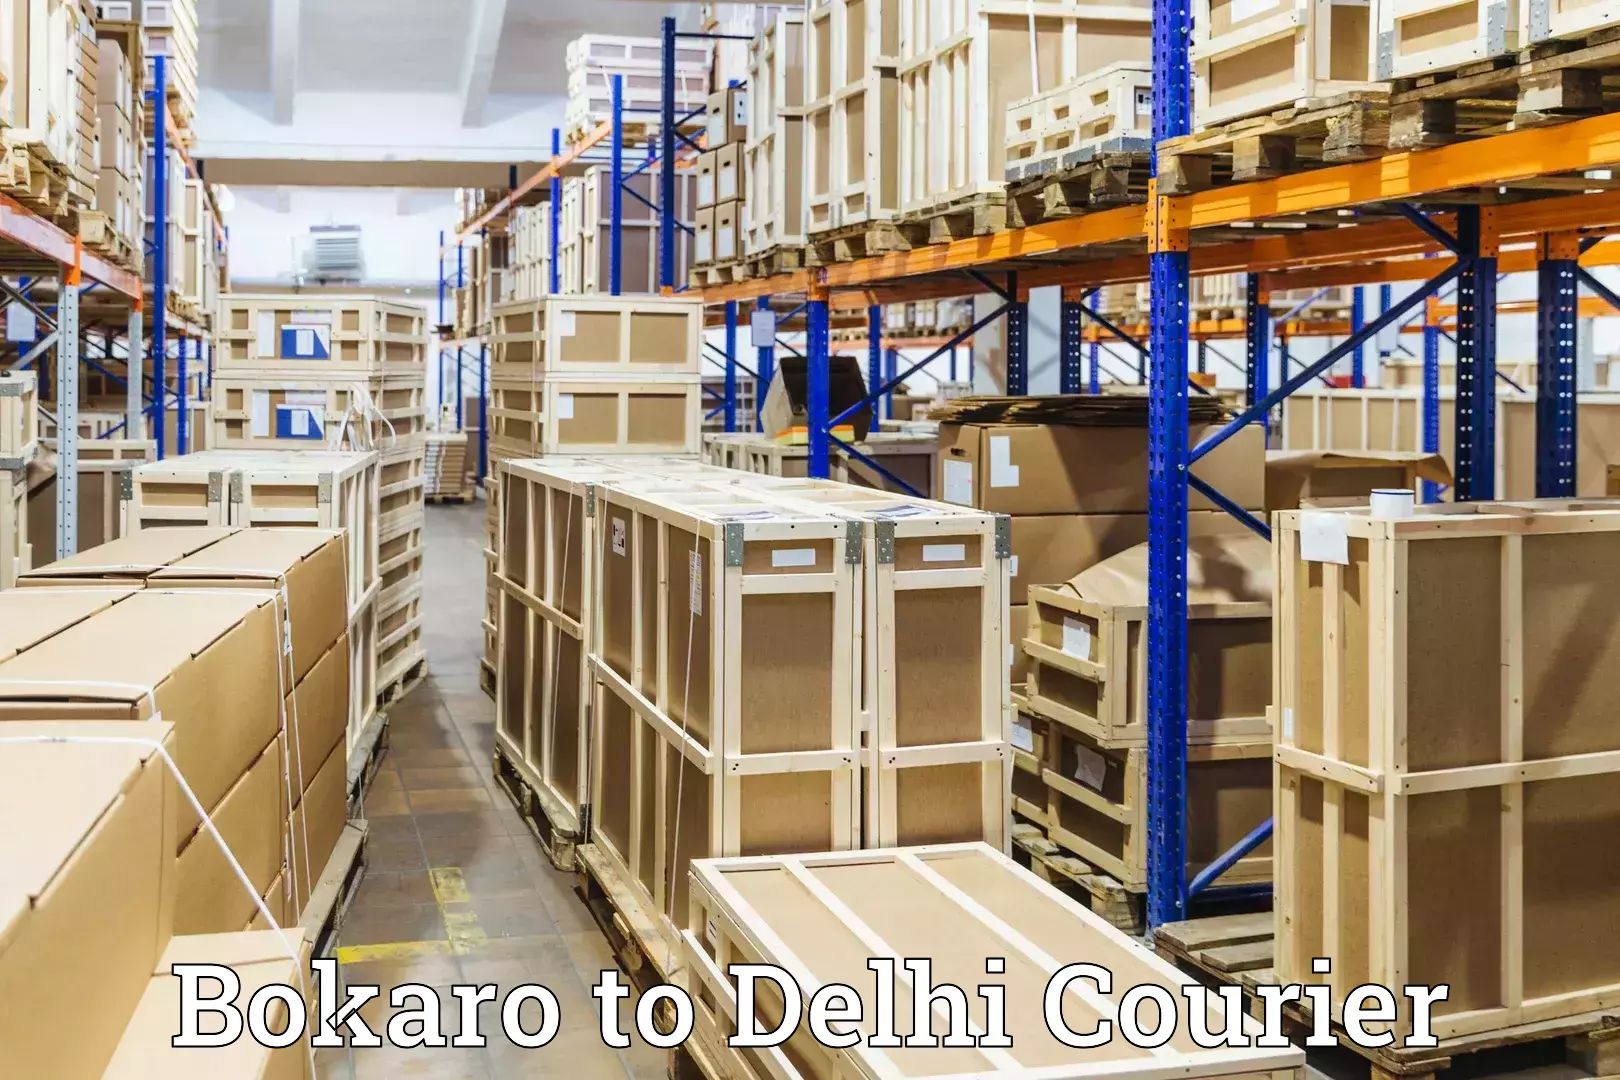 Luggage transit service Bokaro to IIT Delhi